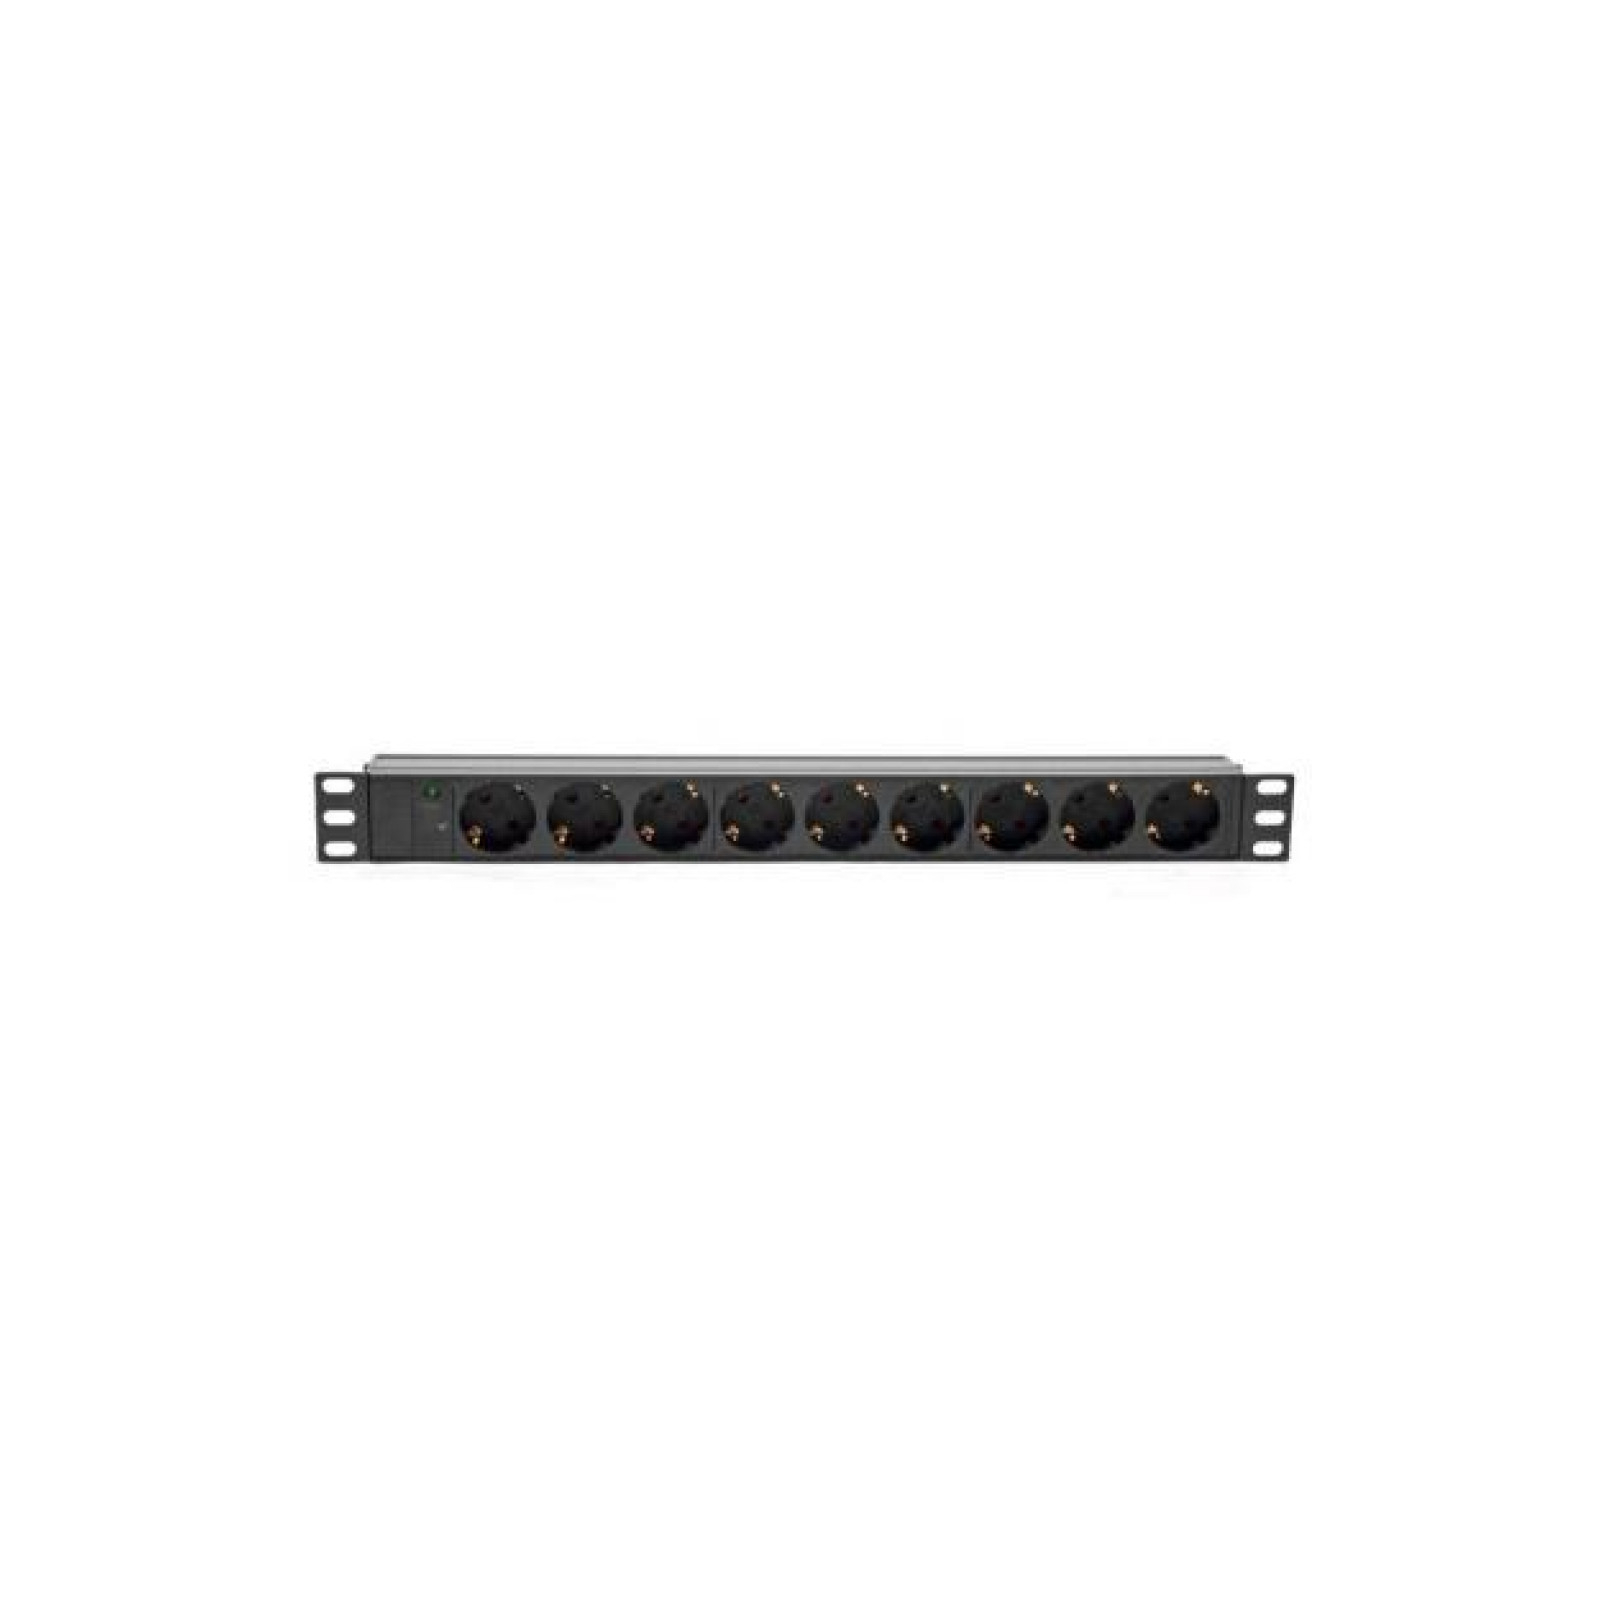 Силовий блок Ritar 19" 9 розеток, кабель 1.8m алюм. корпус без выключатя (1U-M9-K-GER / 00499)